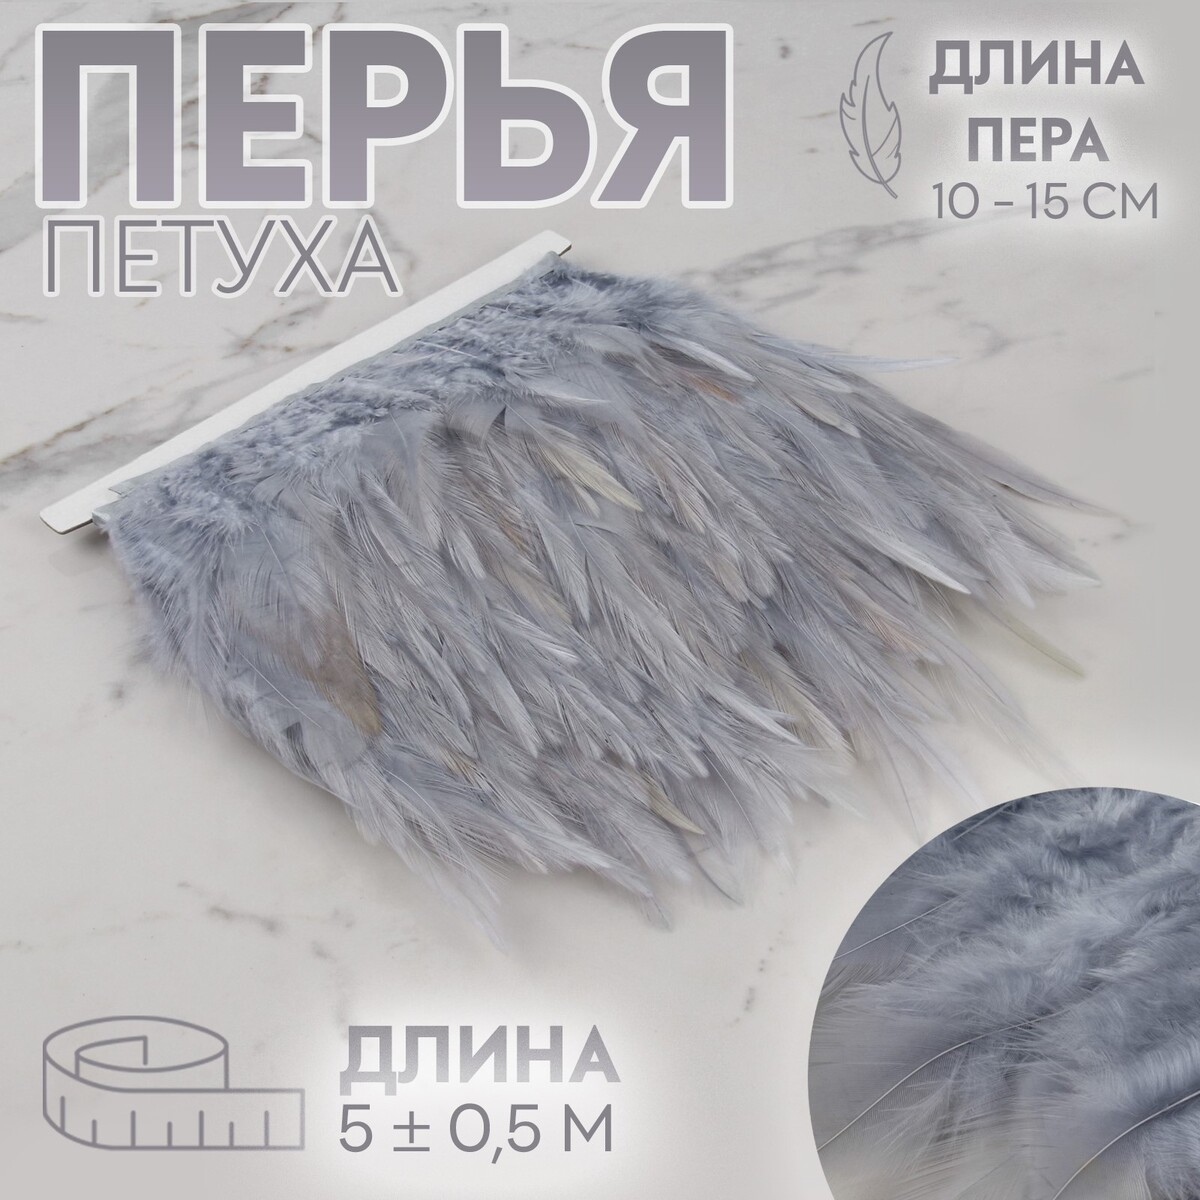 Тесьма с перьями петуха, 10-15 см, 5 ± 0,5 м, цвет серый тесьма с перьями страуса 8 10 см 5 ± 0 5 м белый